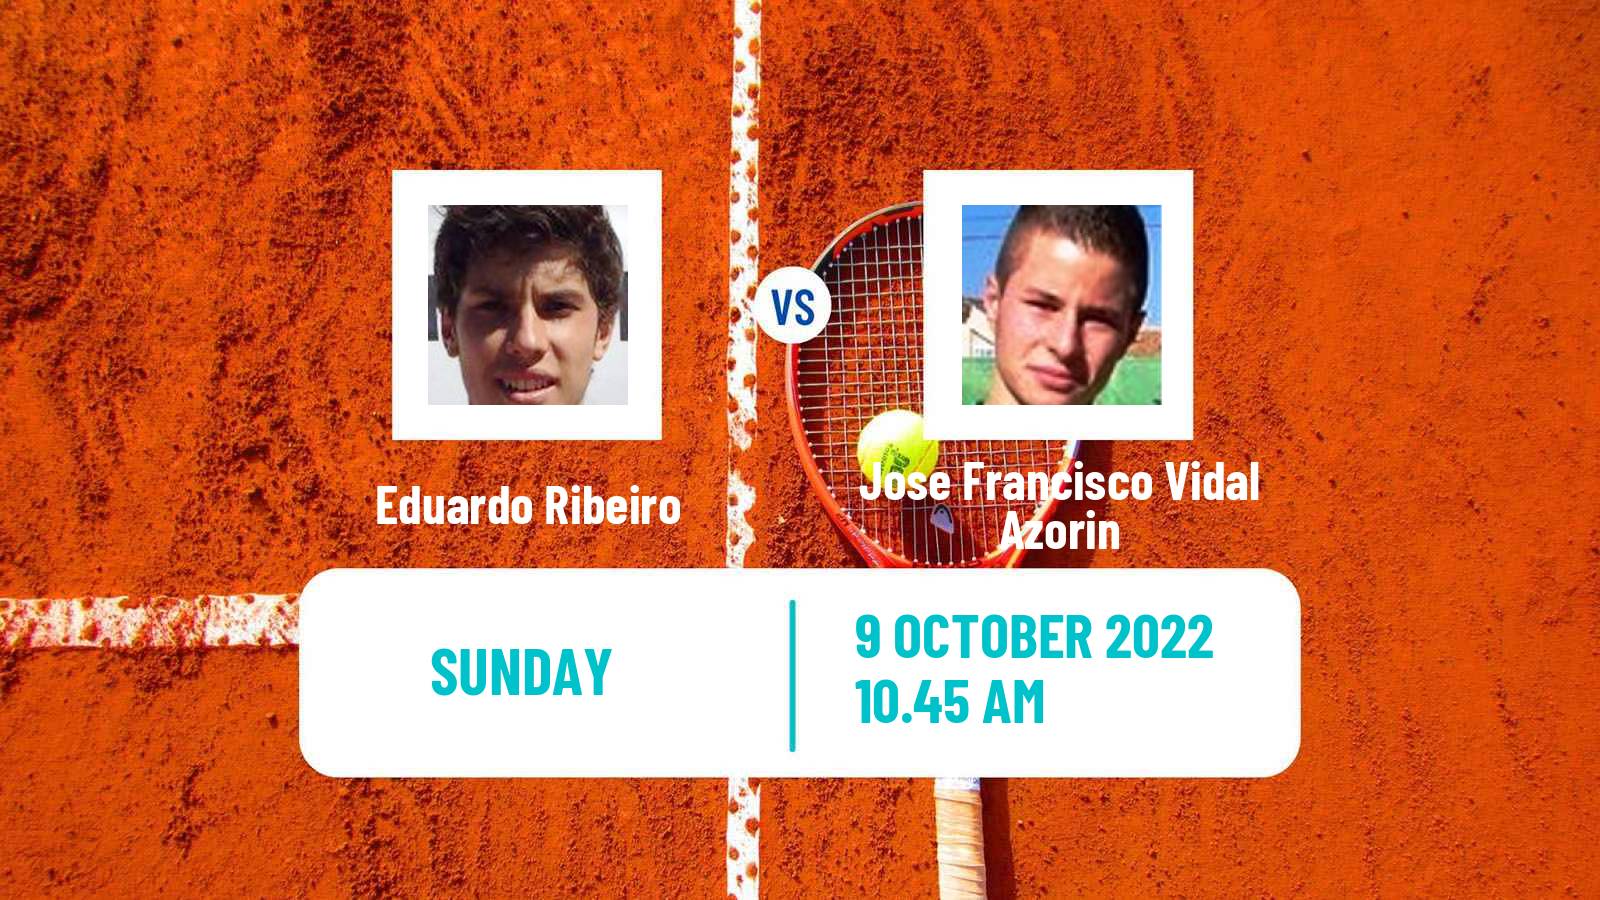 Tennis ATP Challenger Eduardo Ribeiro - Jose Francisco Vidal Azorin